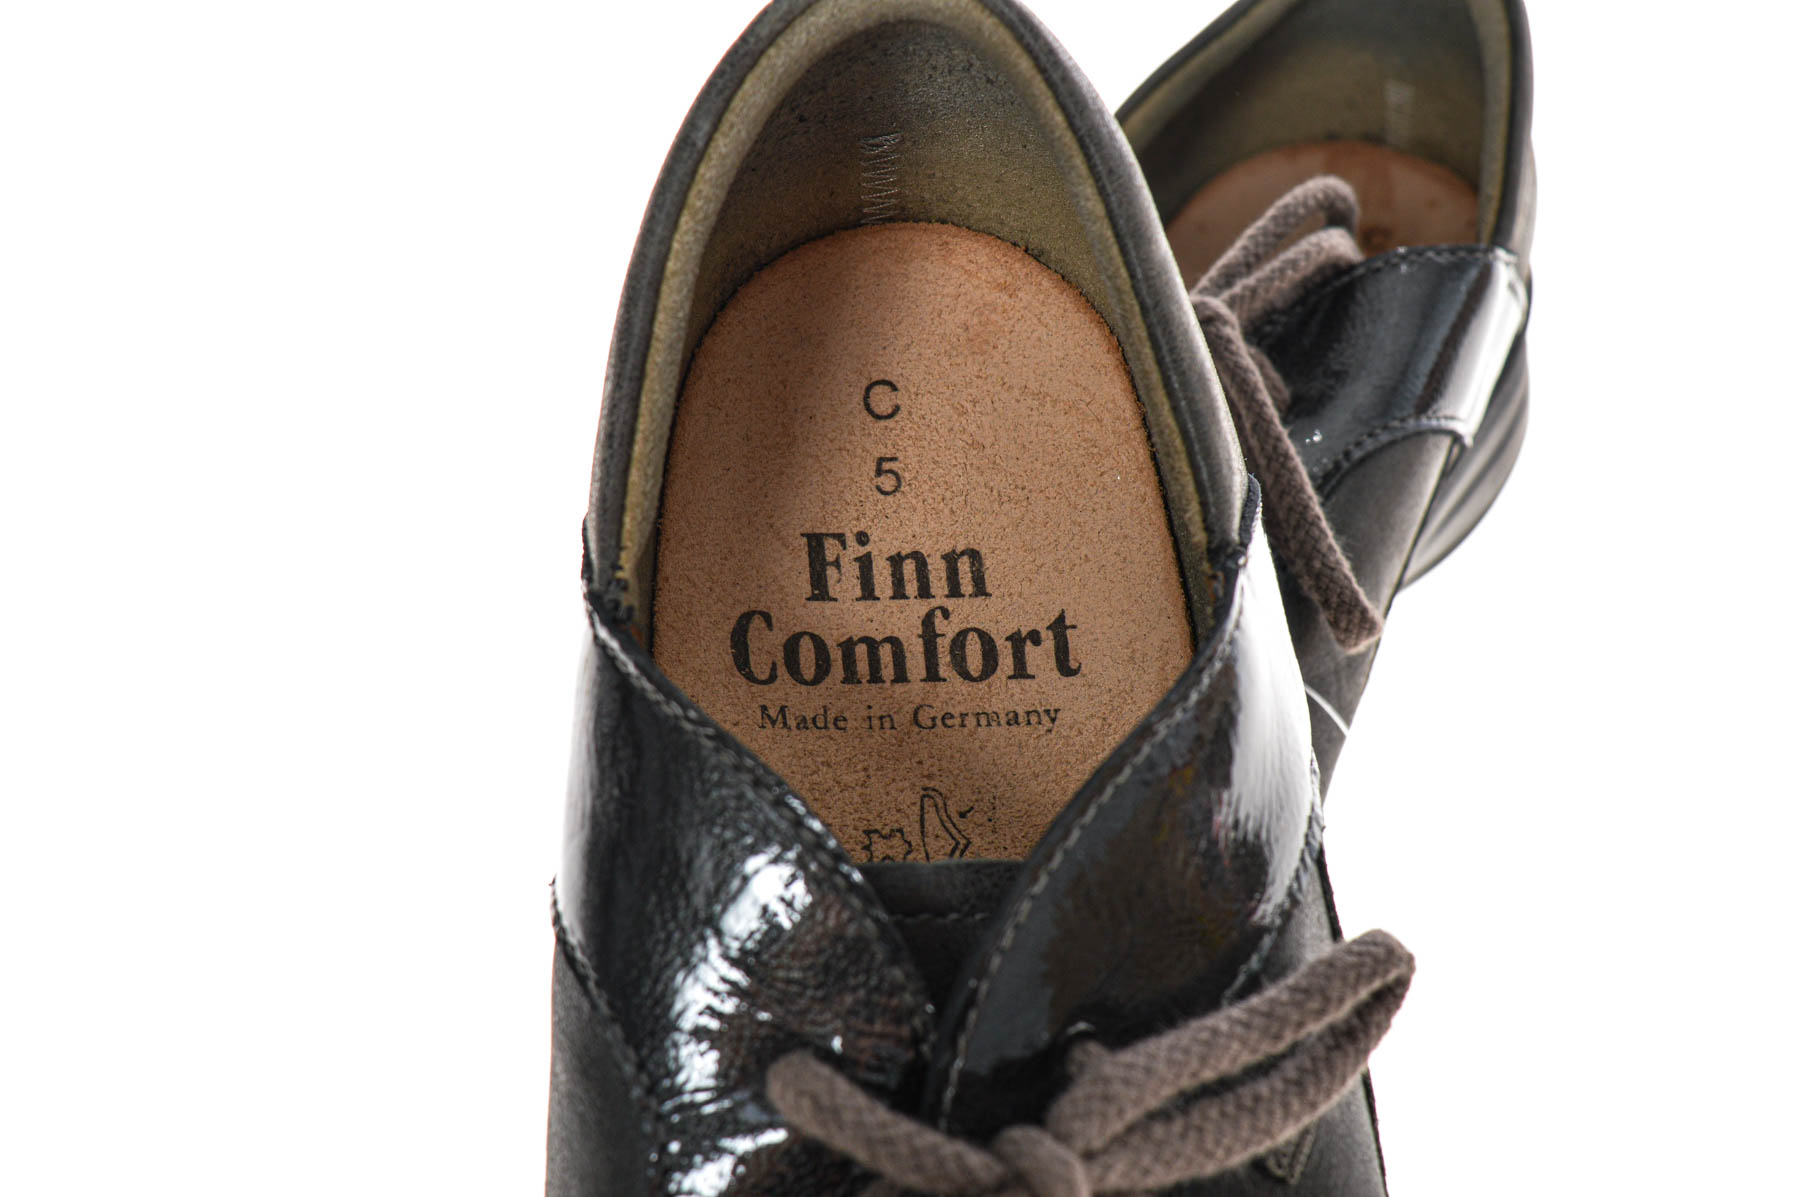 Women's Shoes- Finn Comfort - 4